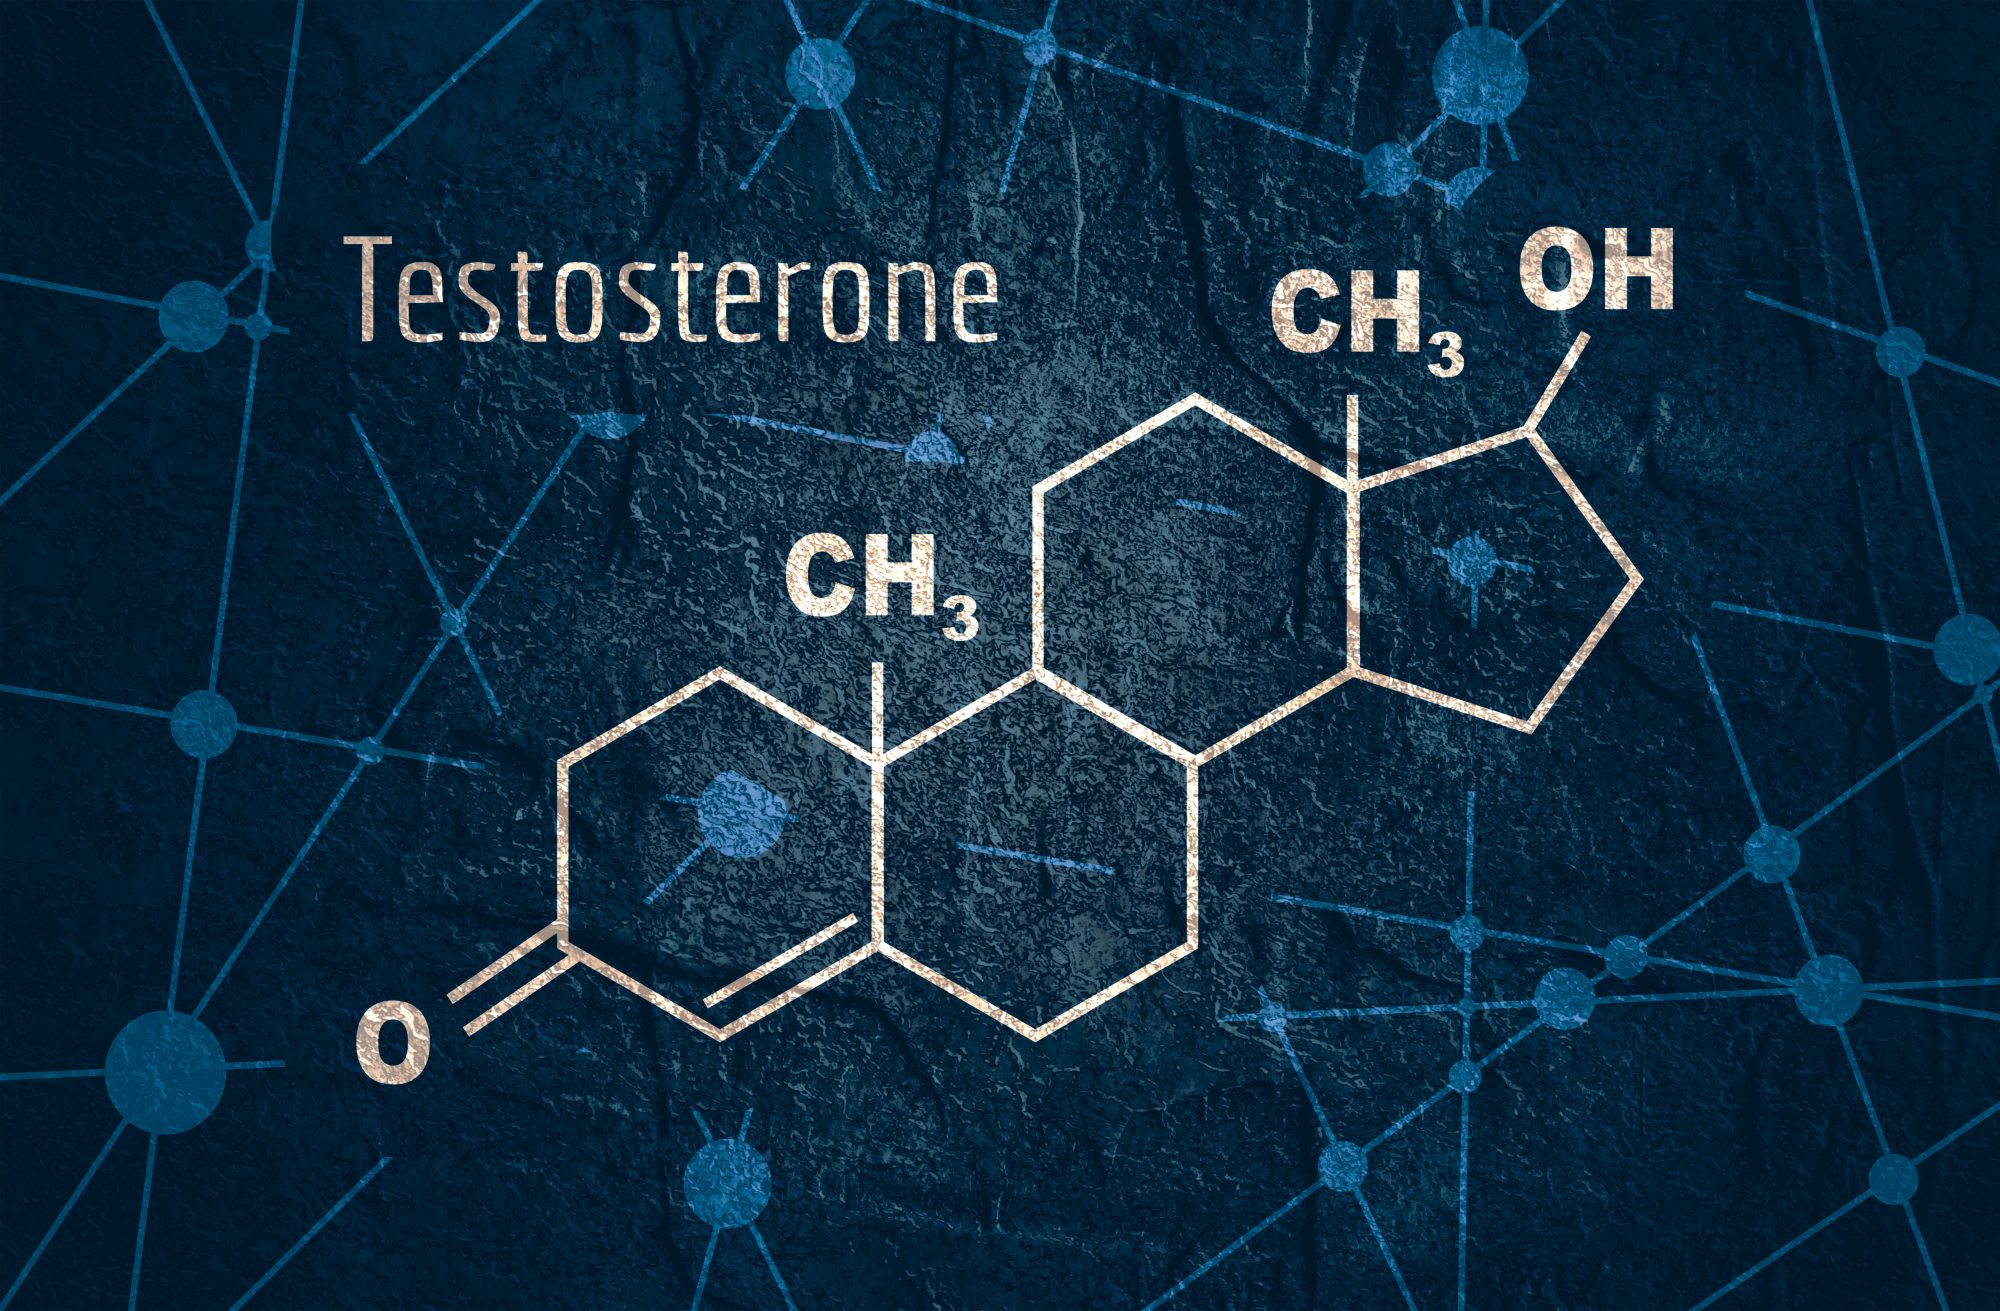 Testosteron – które suplementy faktycznie podnoszą jego poziom